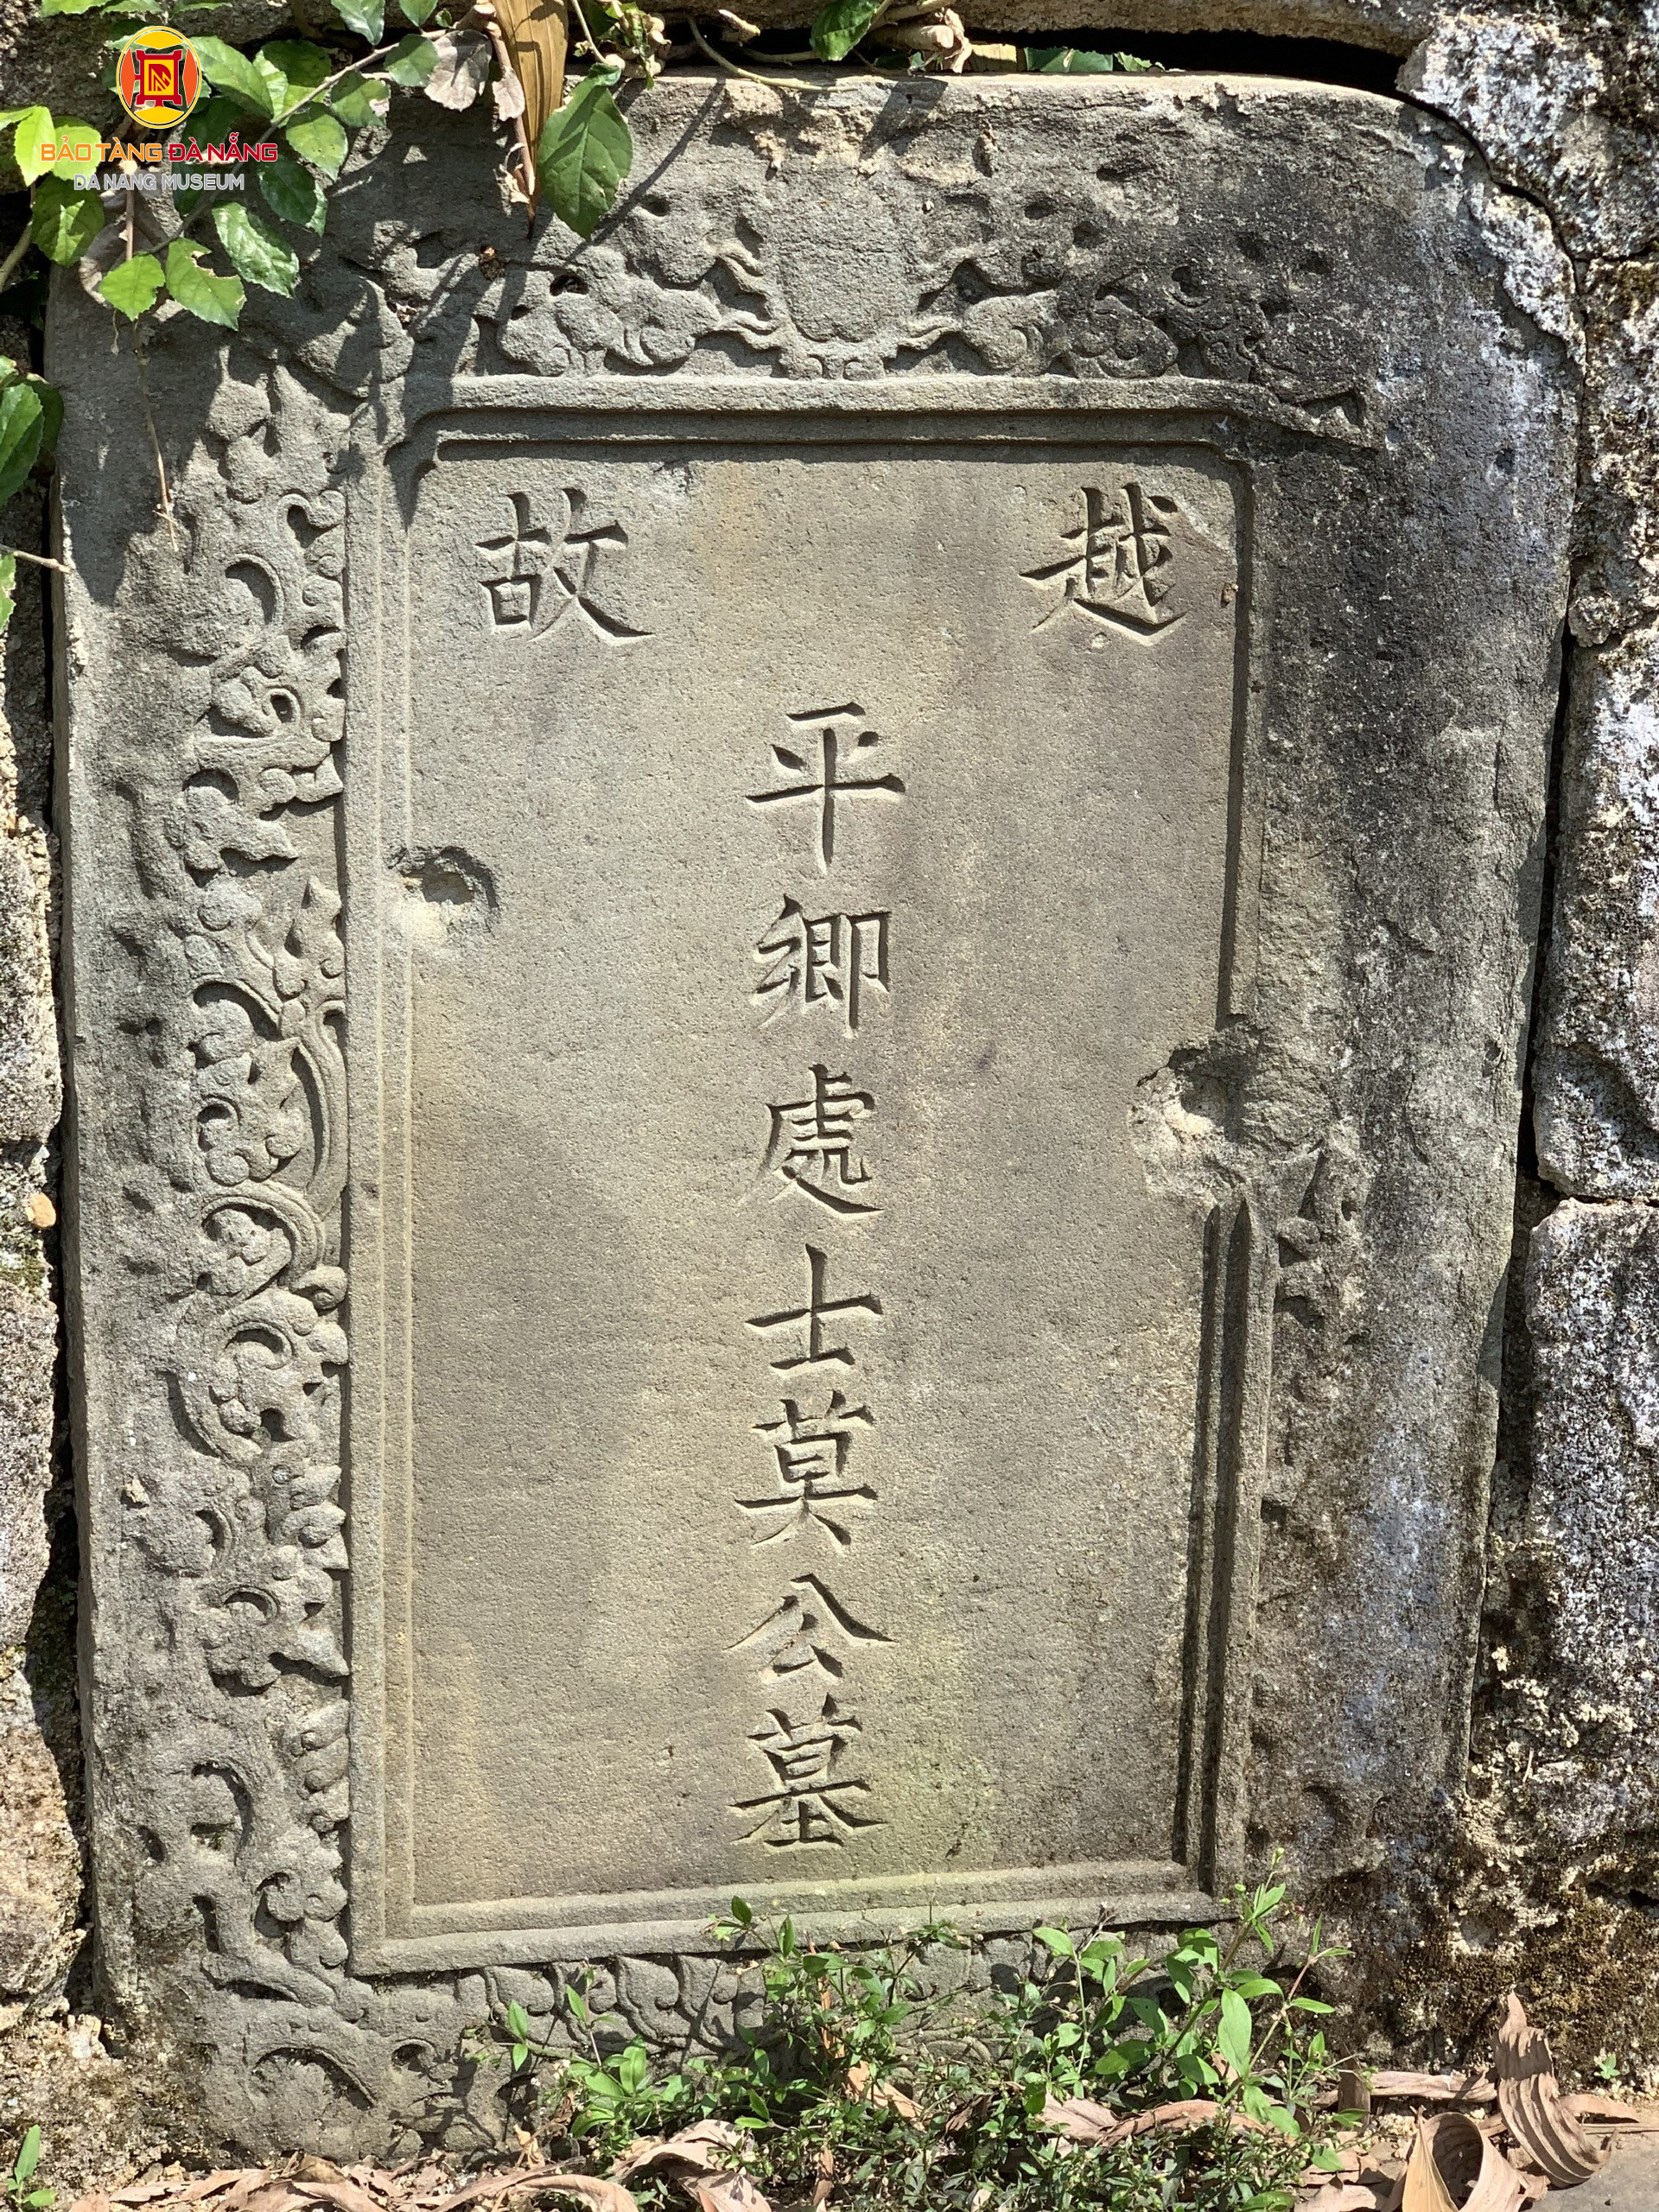 Mộ cổ của một người họ Mạc ở ẩn phát Đà Nẵng với giai thoại kẻ sĩ ở ẩn giúp vua Gia Long nhà Nguyễn - Ảnh 4.